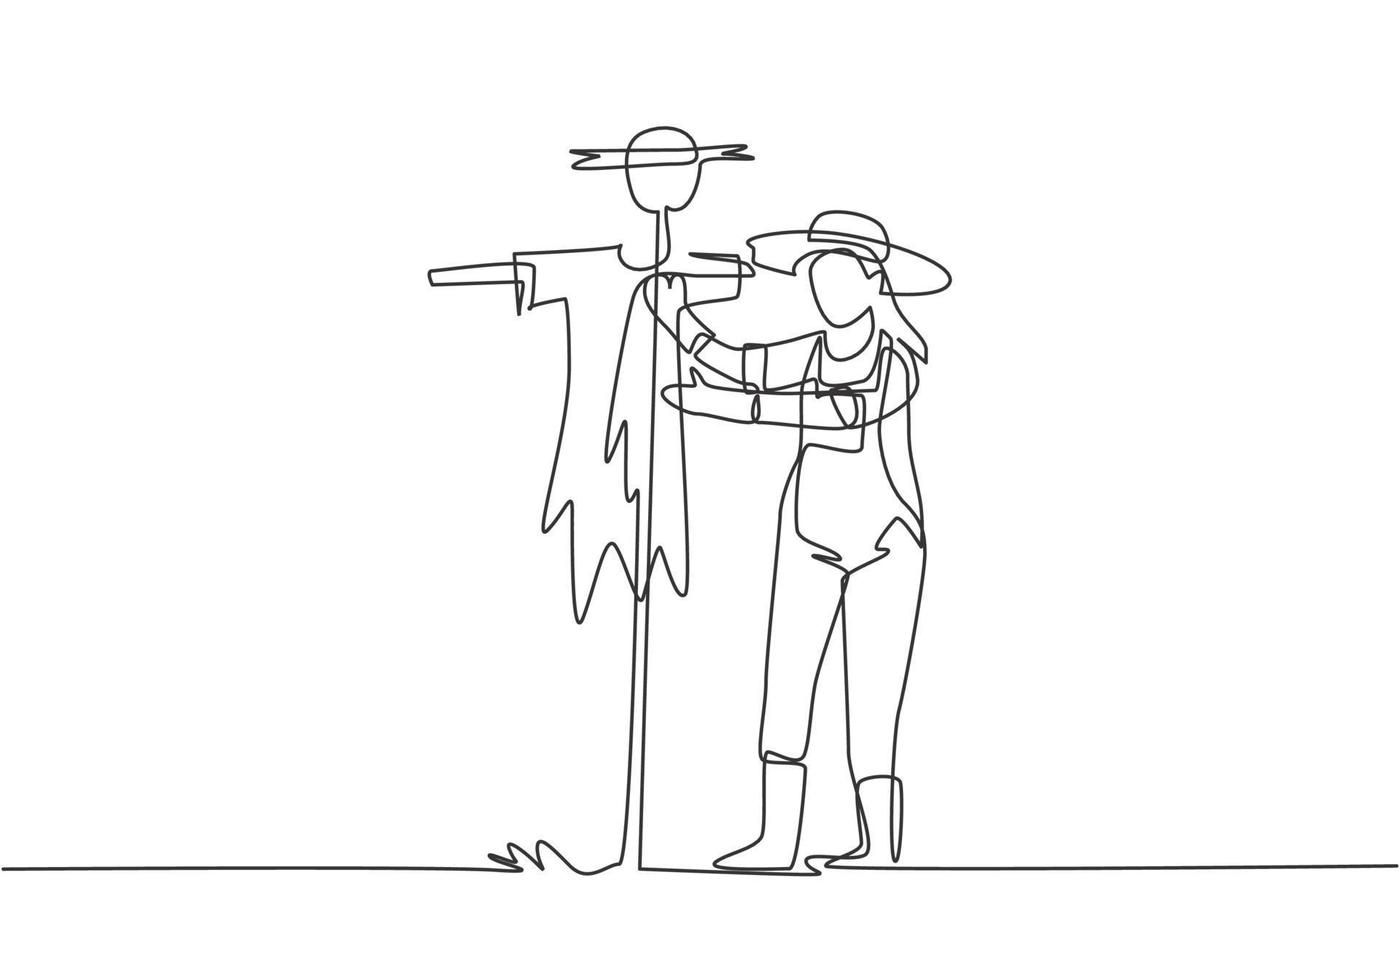 linha única contínua desenhando uma jovem agricultora com um chapéu de palha colocando um espantalho para impedir a entrada de pestes de pássaros. agricultura conceito minimalista. uma linha desenhar ilustração em vetor design gráfico.